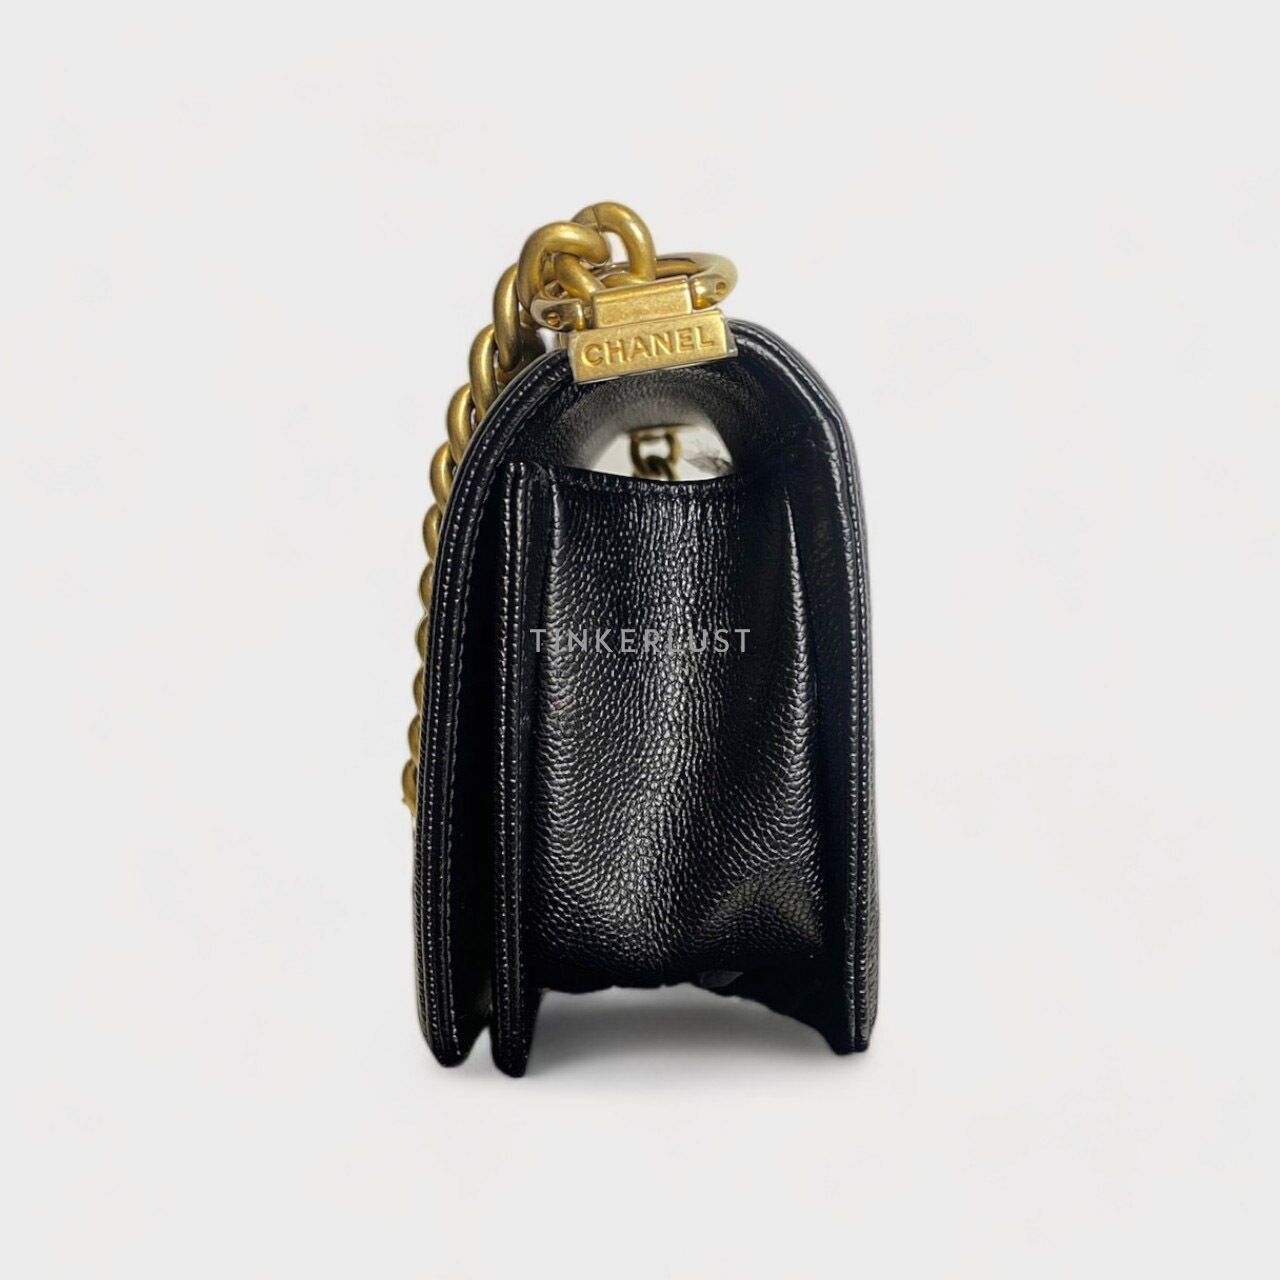 Chanel Boy Small Caviar Chevron Black GHW #24 Shoulder Bag